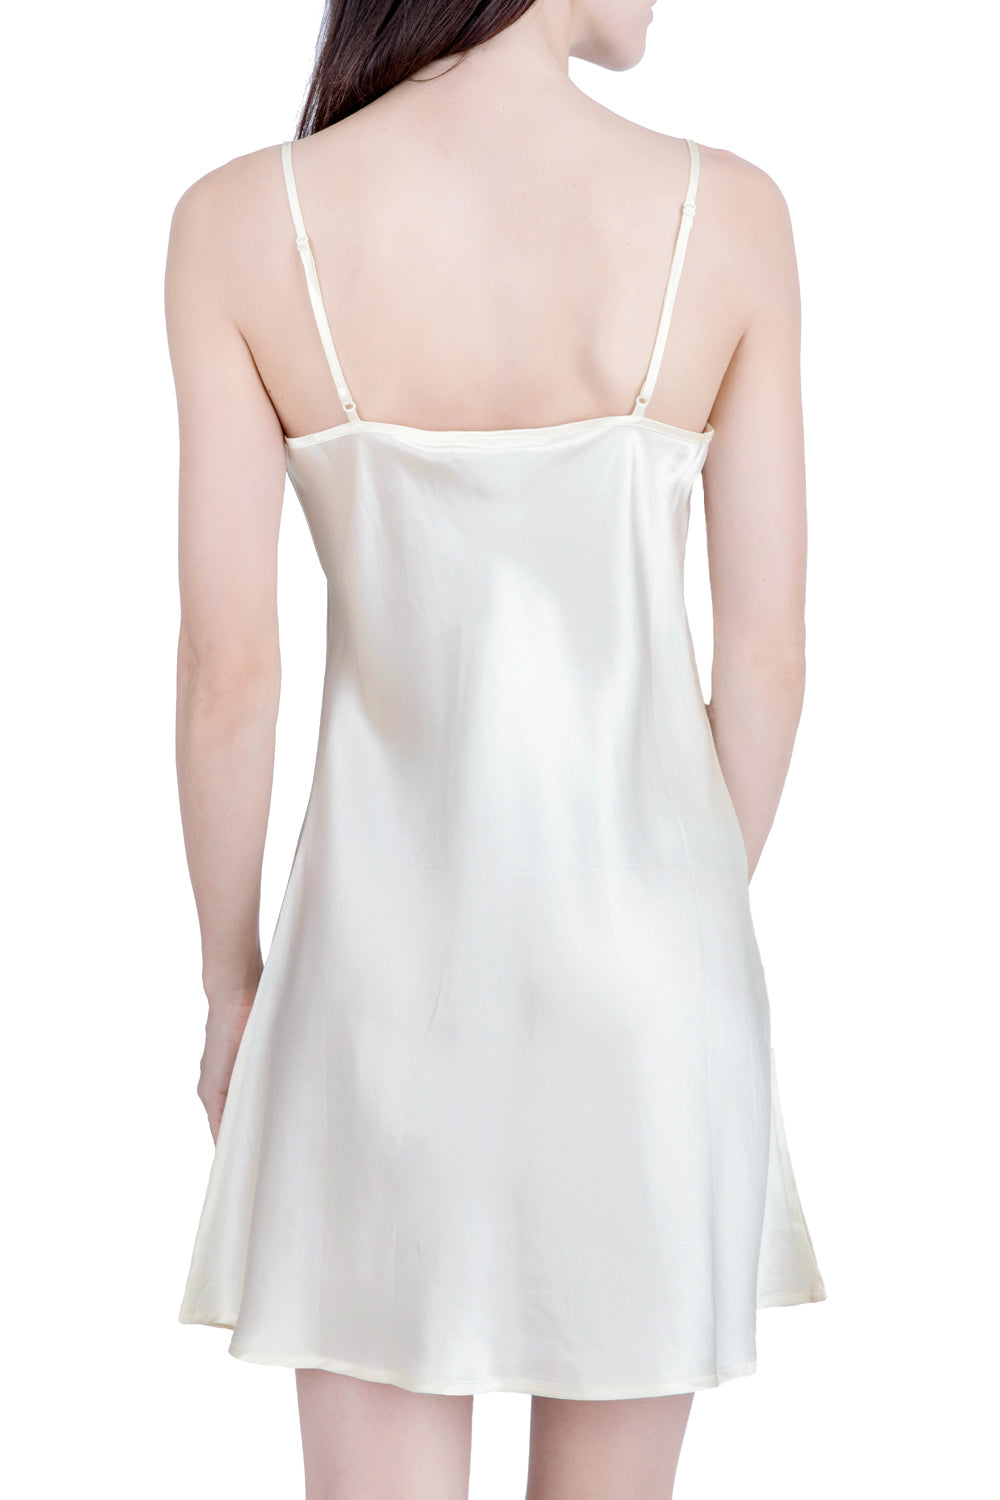 Women's Silk Sleepwear 100% Silk Chemise -OSCAR ROSSA